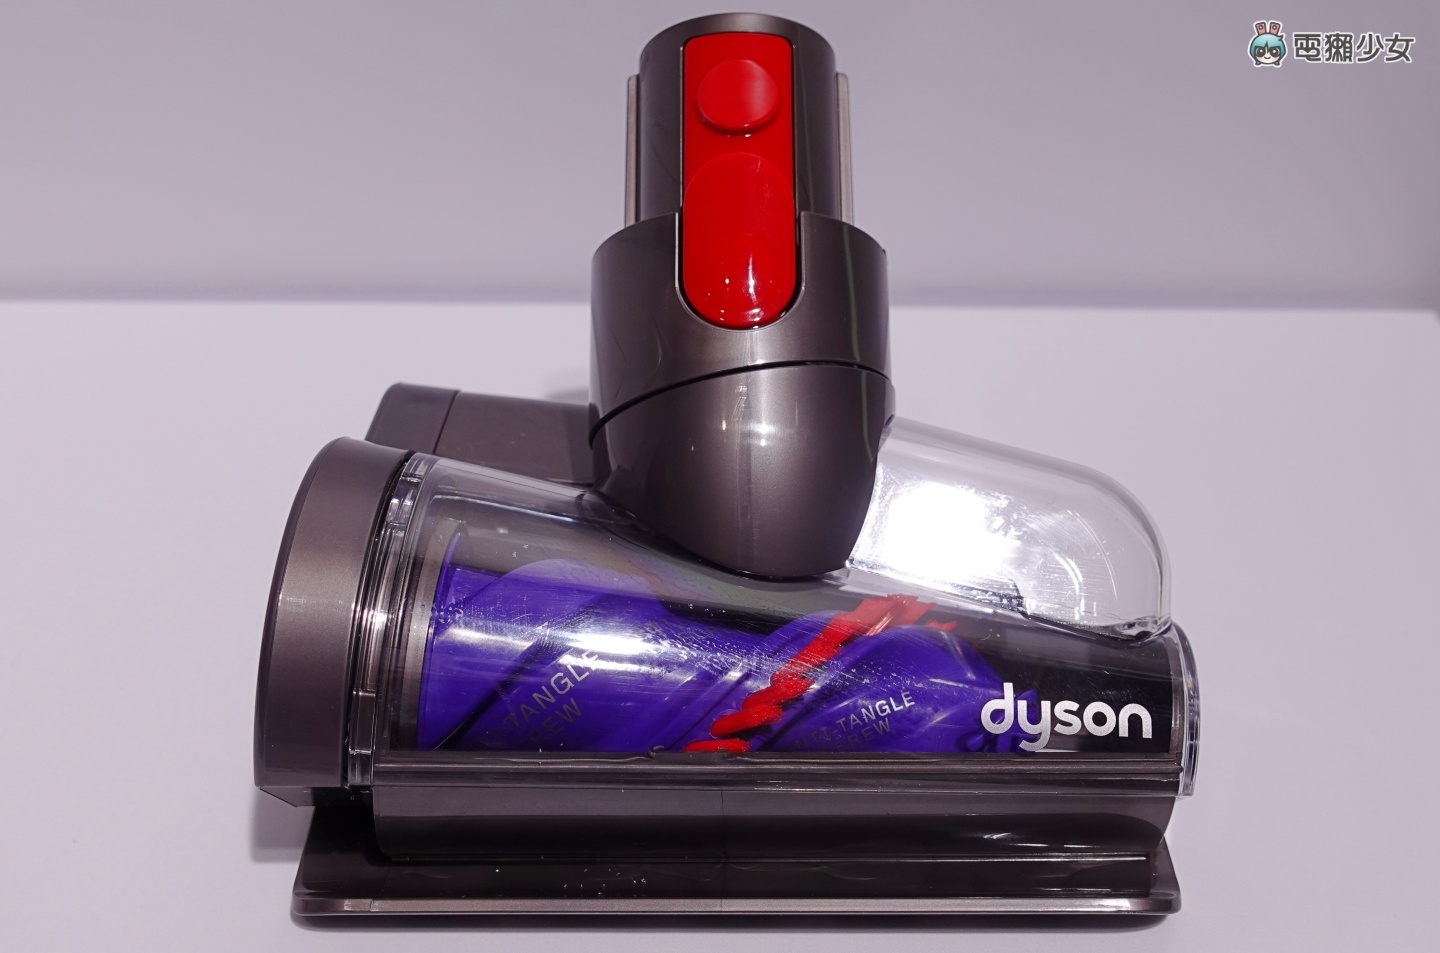 出門｜Dyson V12 Detect Slim 手持吸塵器正式登台！雷射偵測、聲學感應及灰塵分類統計 三大功能有感升級！